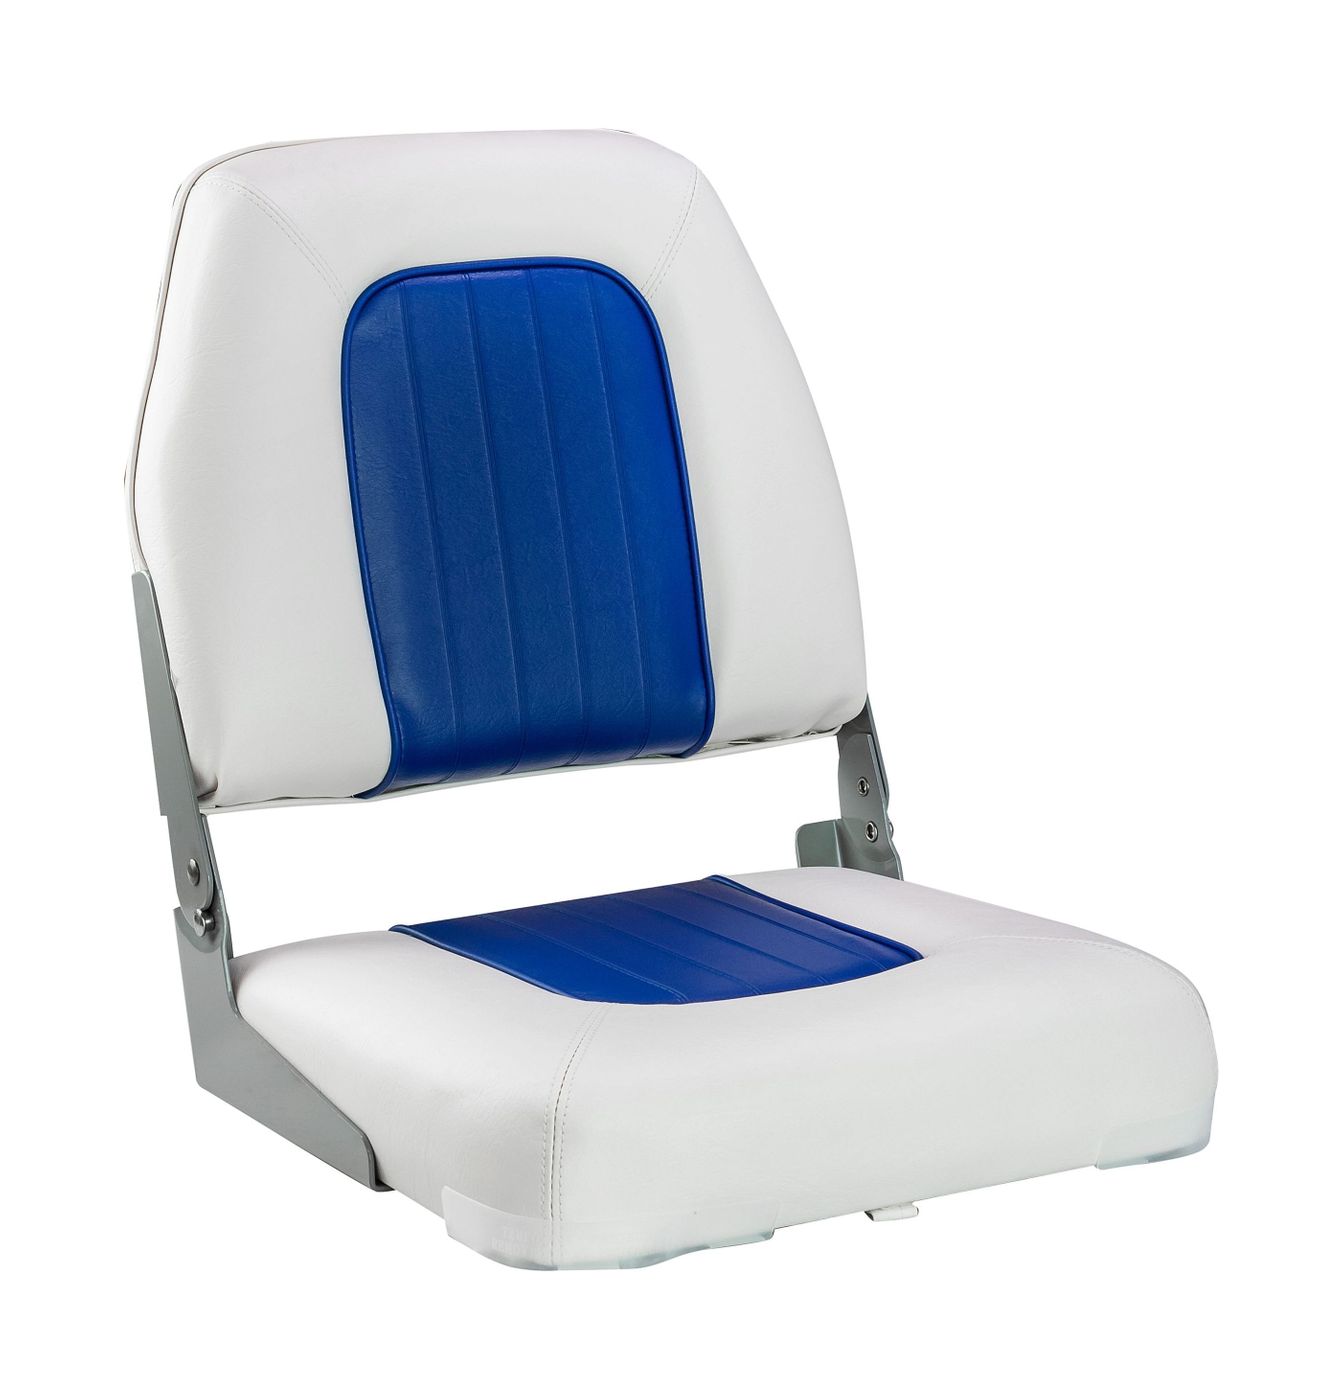 Кресло мягкое складное Deluxe, обивка винил, цвет белый/синий, Marine Rocket 75137WB-MR сзу rocket